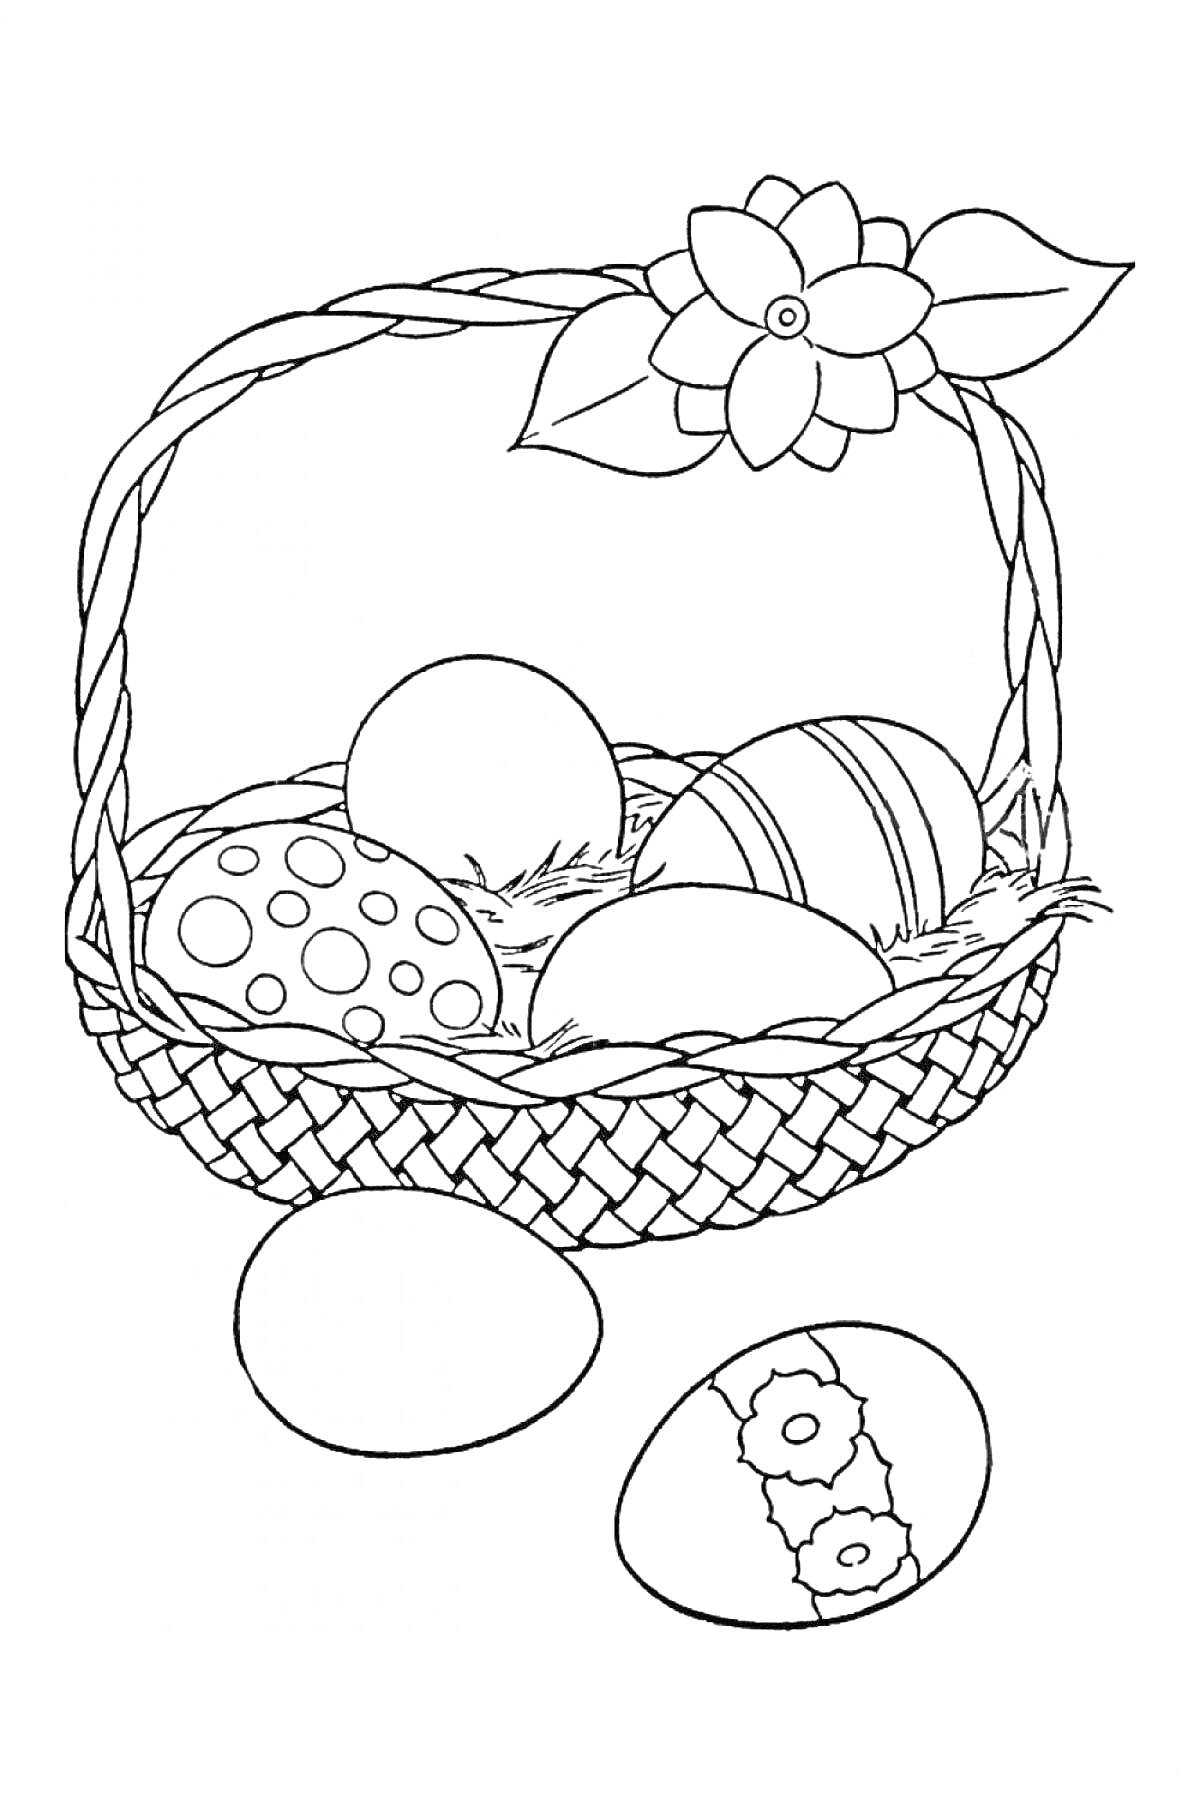 Пасхальная корзина с цветком, в которой находятся три декорированных яйца и два яйца вне корзины на переднем плане